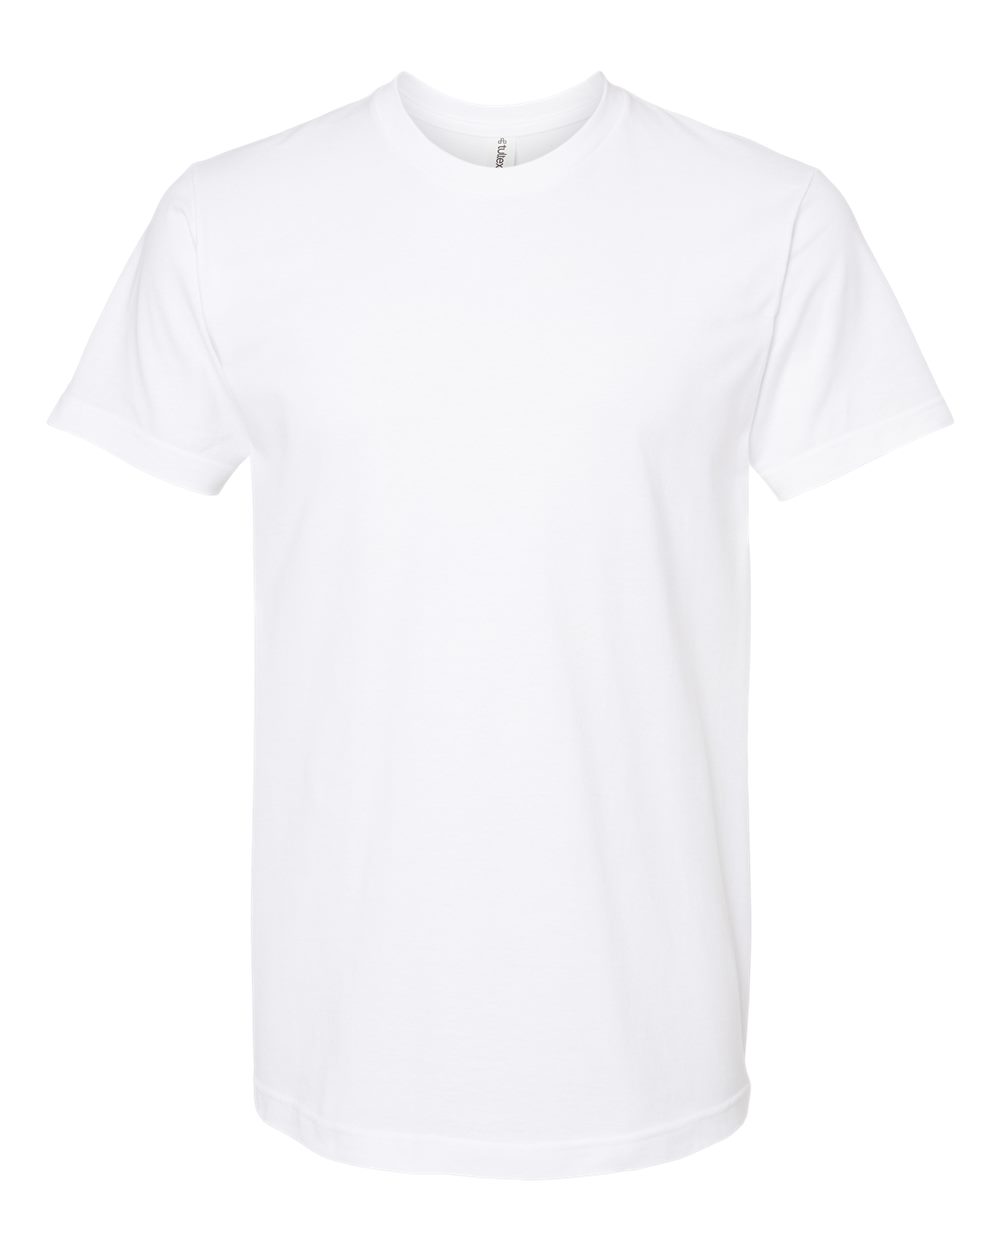 Tultex 202 Adult Shirt - XXXL